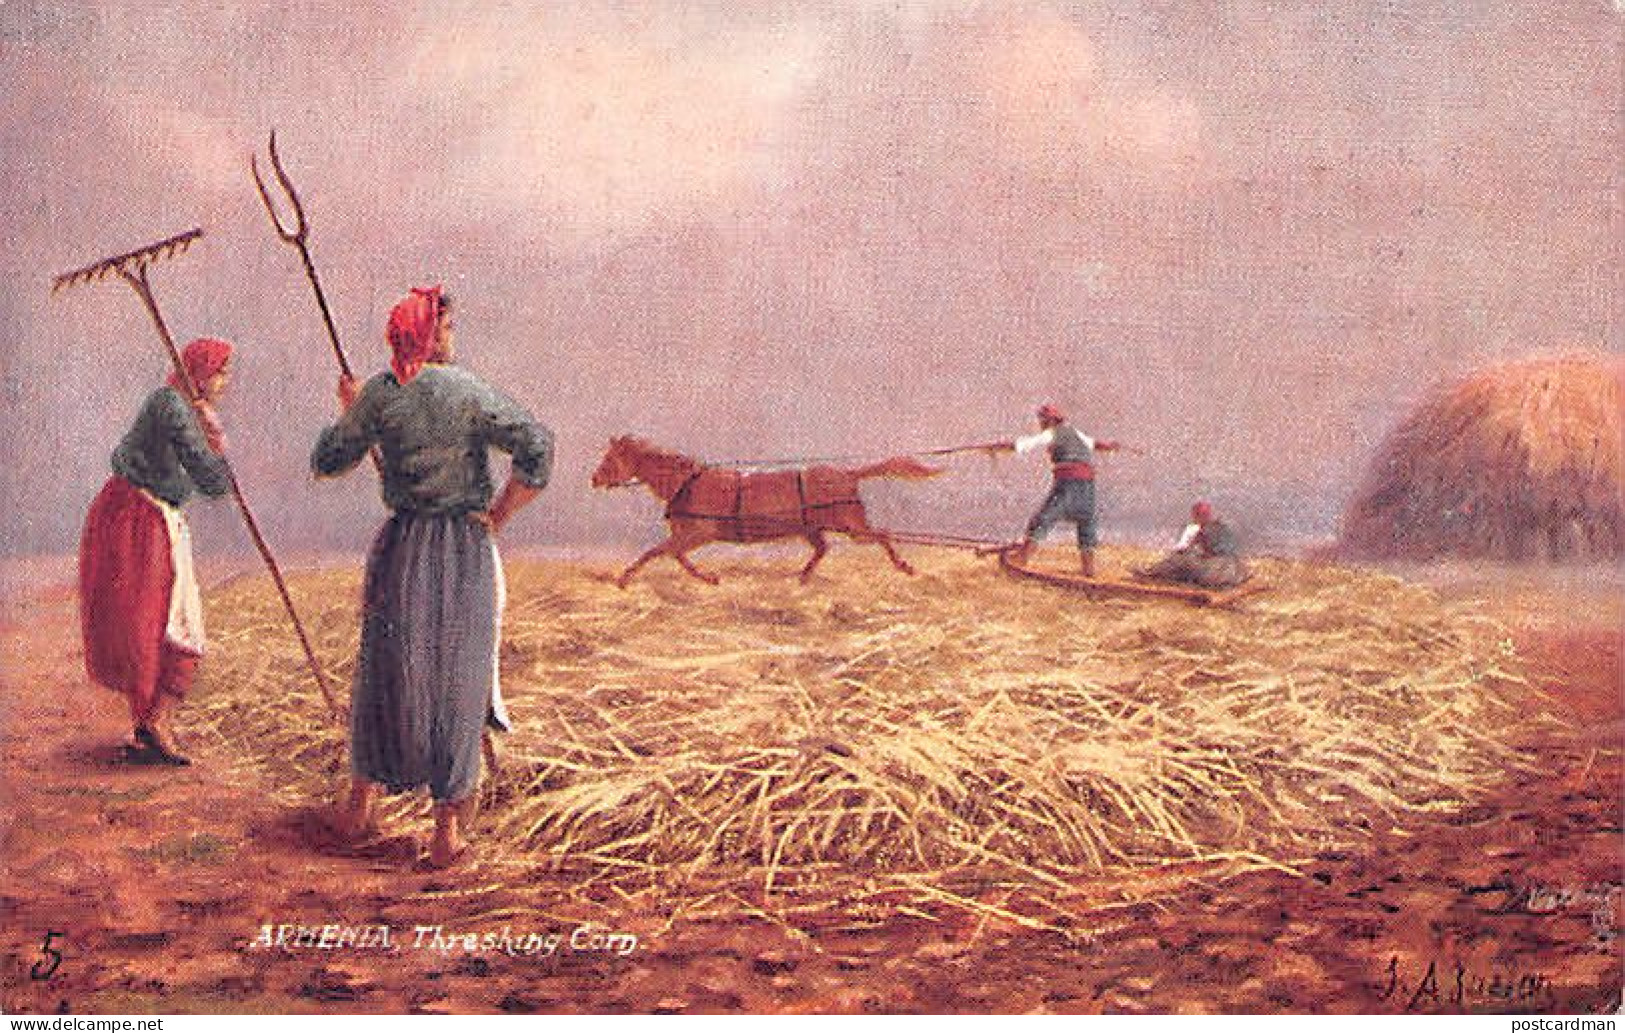 Armenia - Threshing Corn - Publ. Raphael Tuck & Sons - Arménie